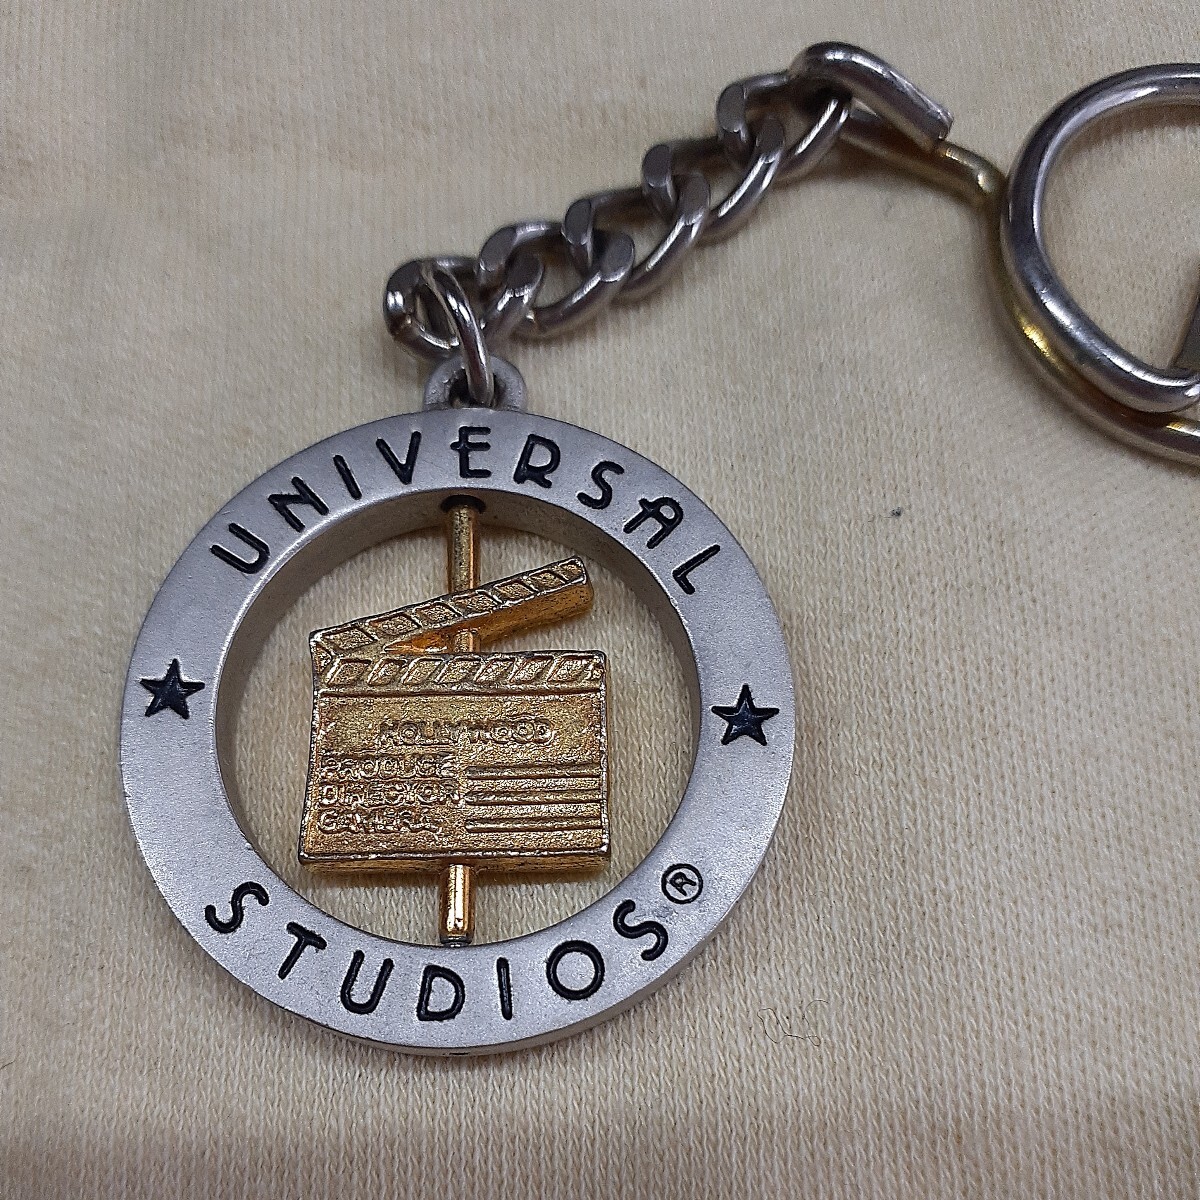  универсальный Studio Hollywood брелок для ключа ga подбородок ko стоимость доставки 120 иен 